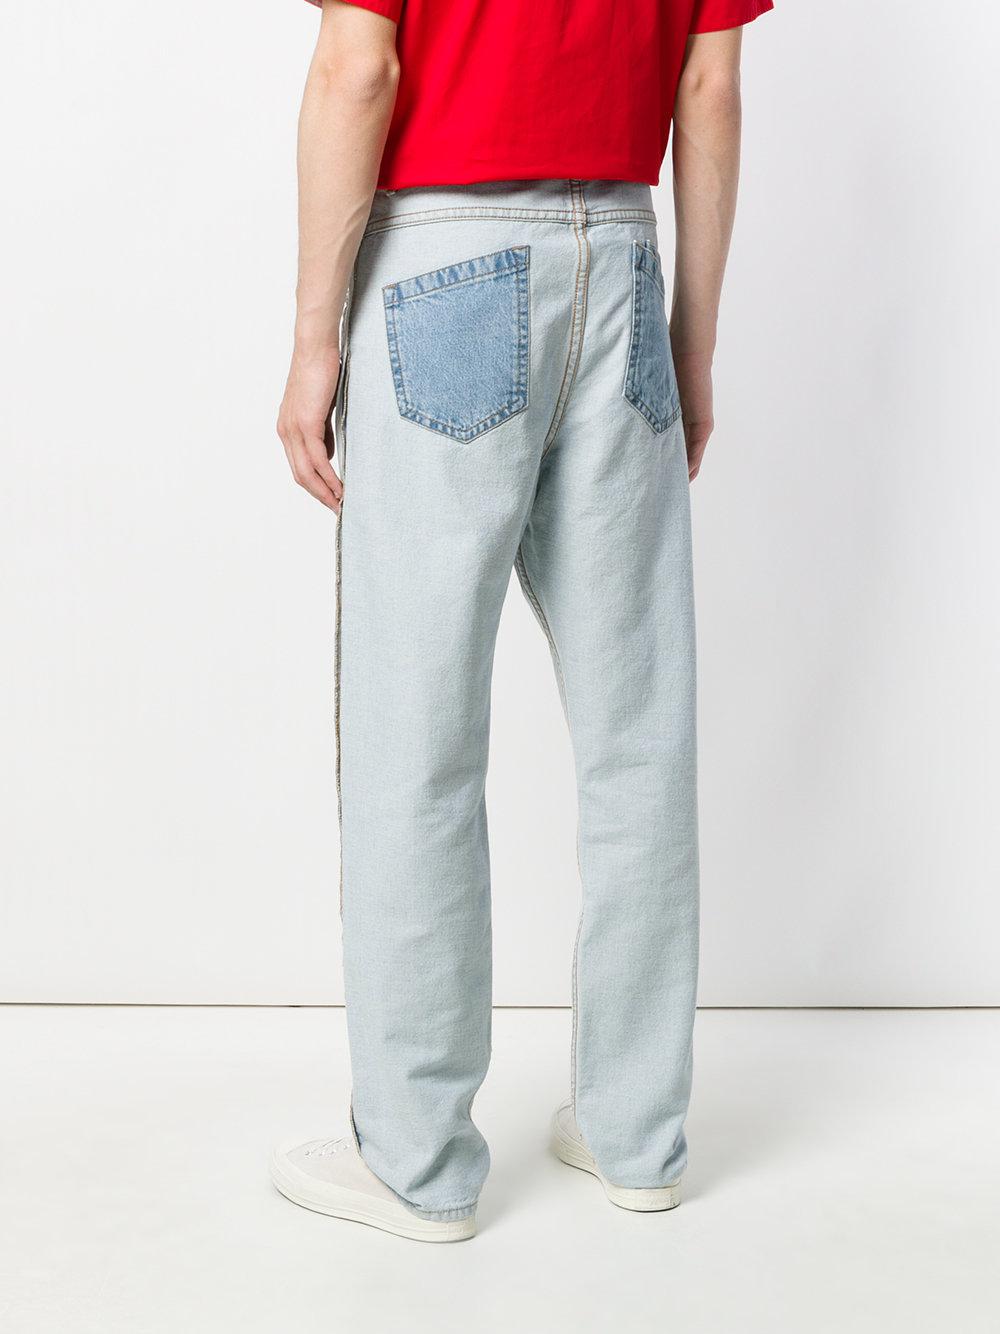 Helmut Lang Denim Inside Out Front Pockets Jeans in Blue for Men | Lyst